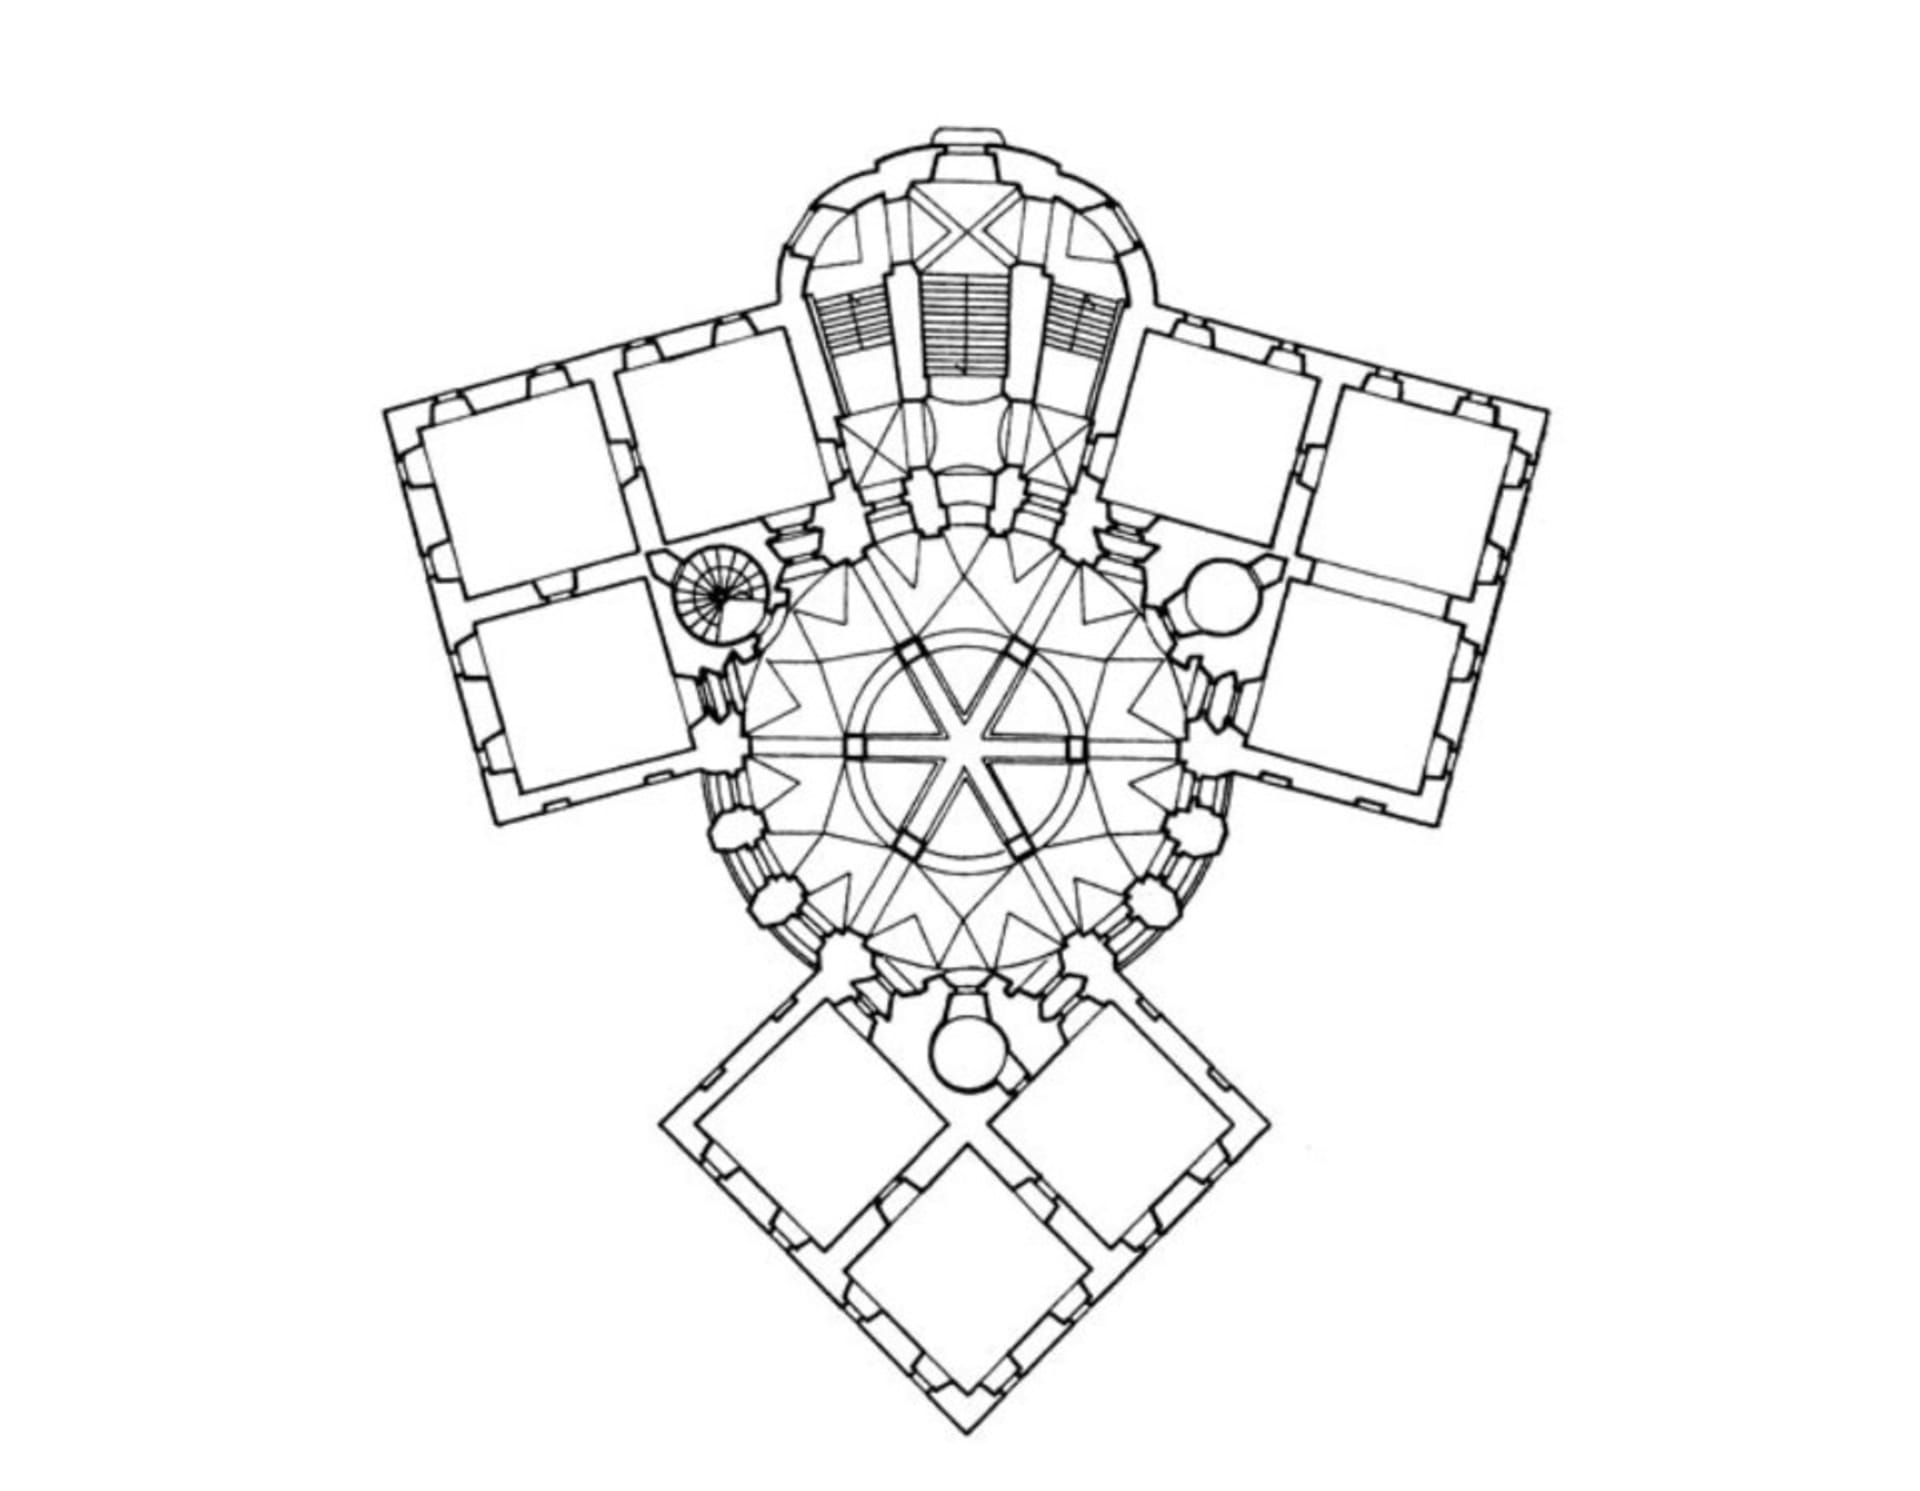 Půdorys zámku Karlova Koruna v Chlumci tvoří korunovační Svatováclavská koruna. Skvostná vychytávka Jana Blažeje Santiniho